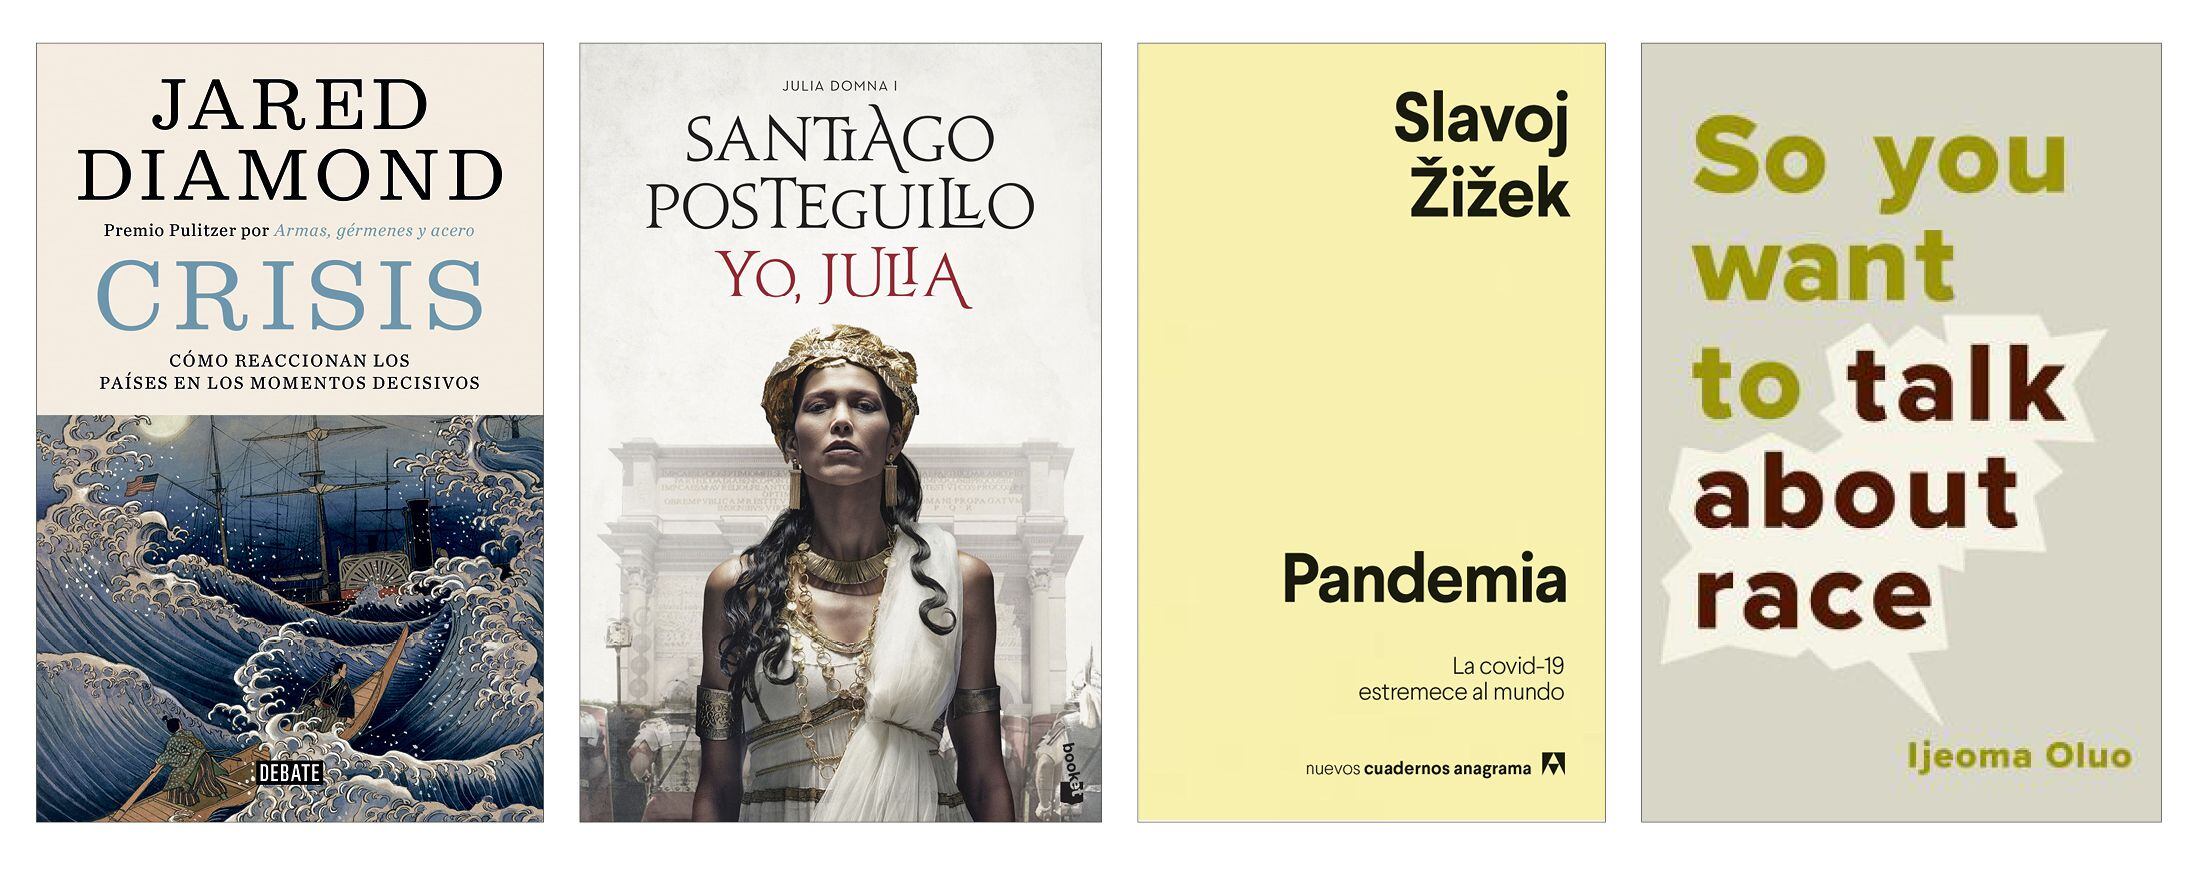 Libros recomendados por Antonio Catalán, Gabriel Escarrer, Juan José Brugera y Enrique Lores.